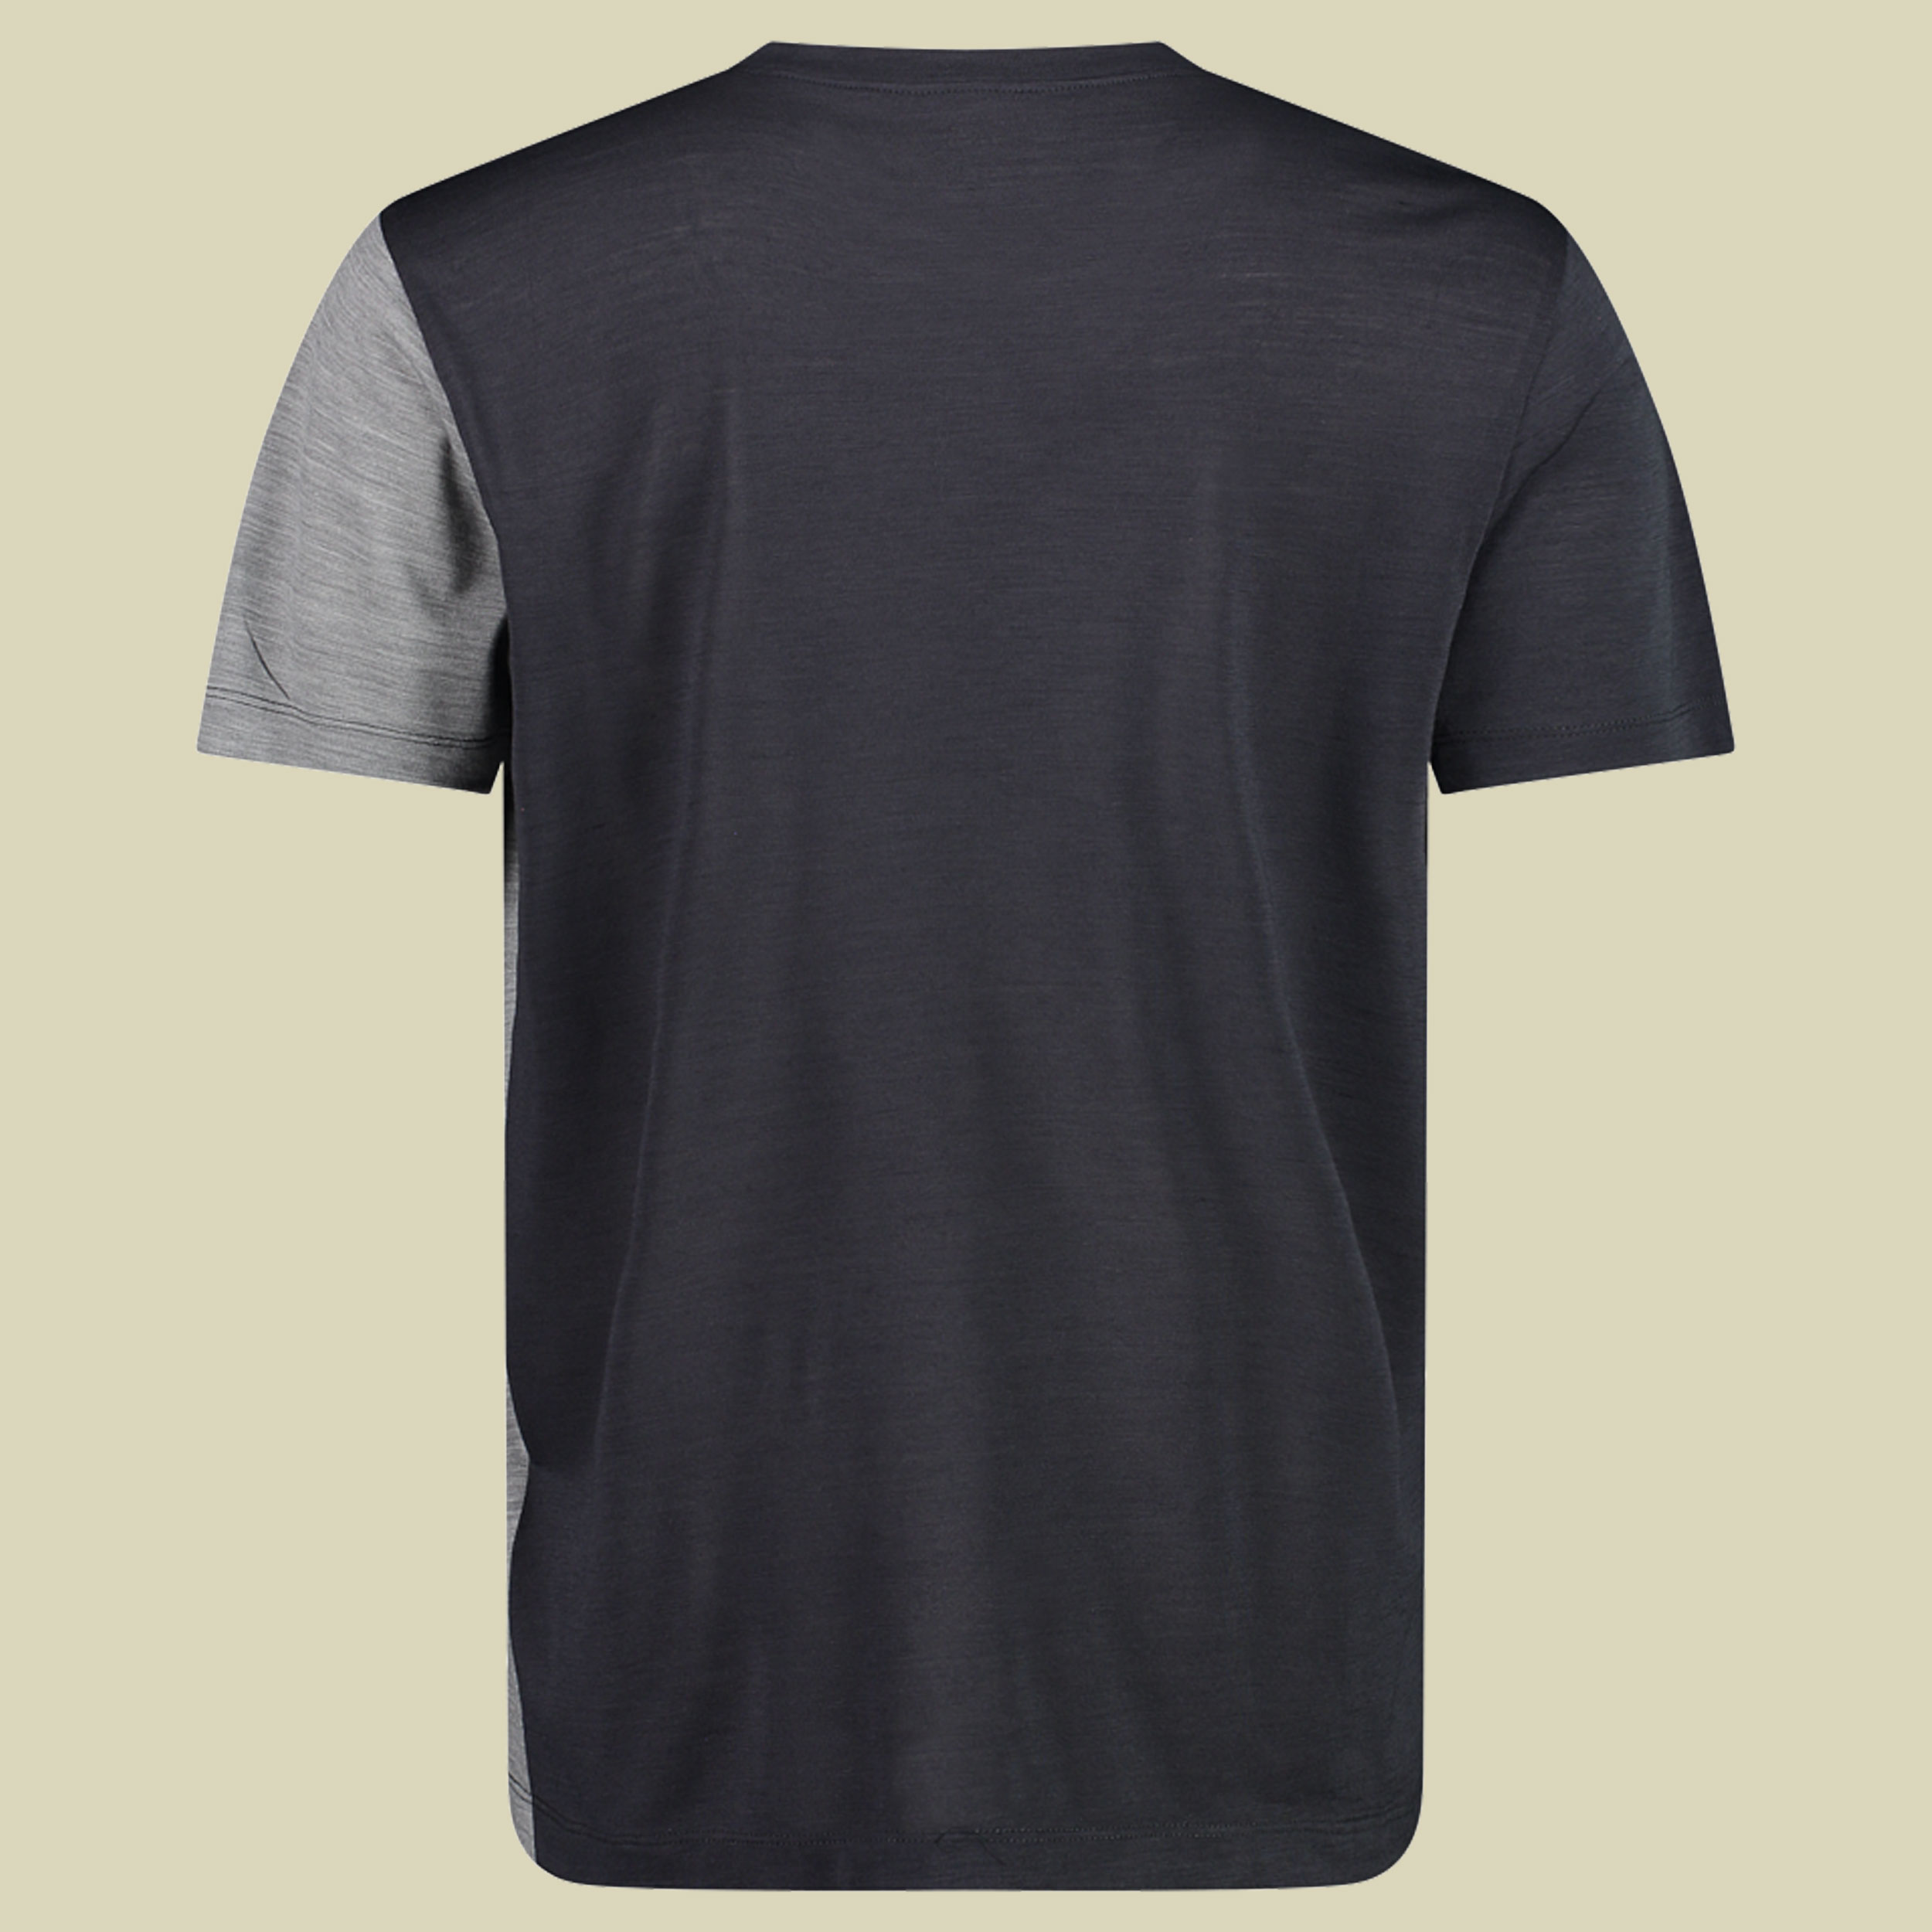 Man T-Shirt 33N5537 Größe 48 Farbe U423 antracite